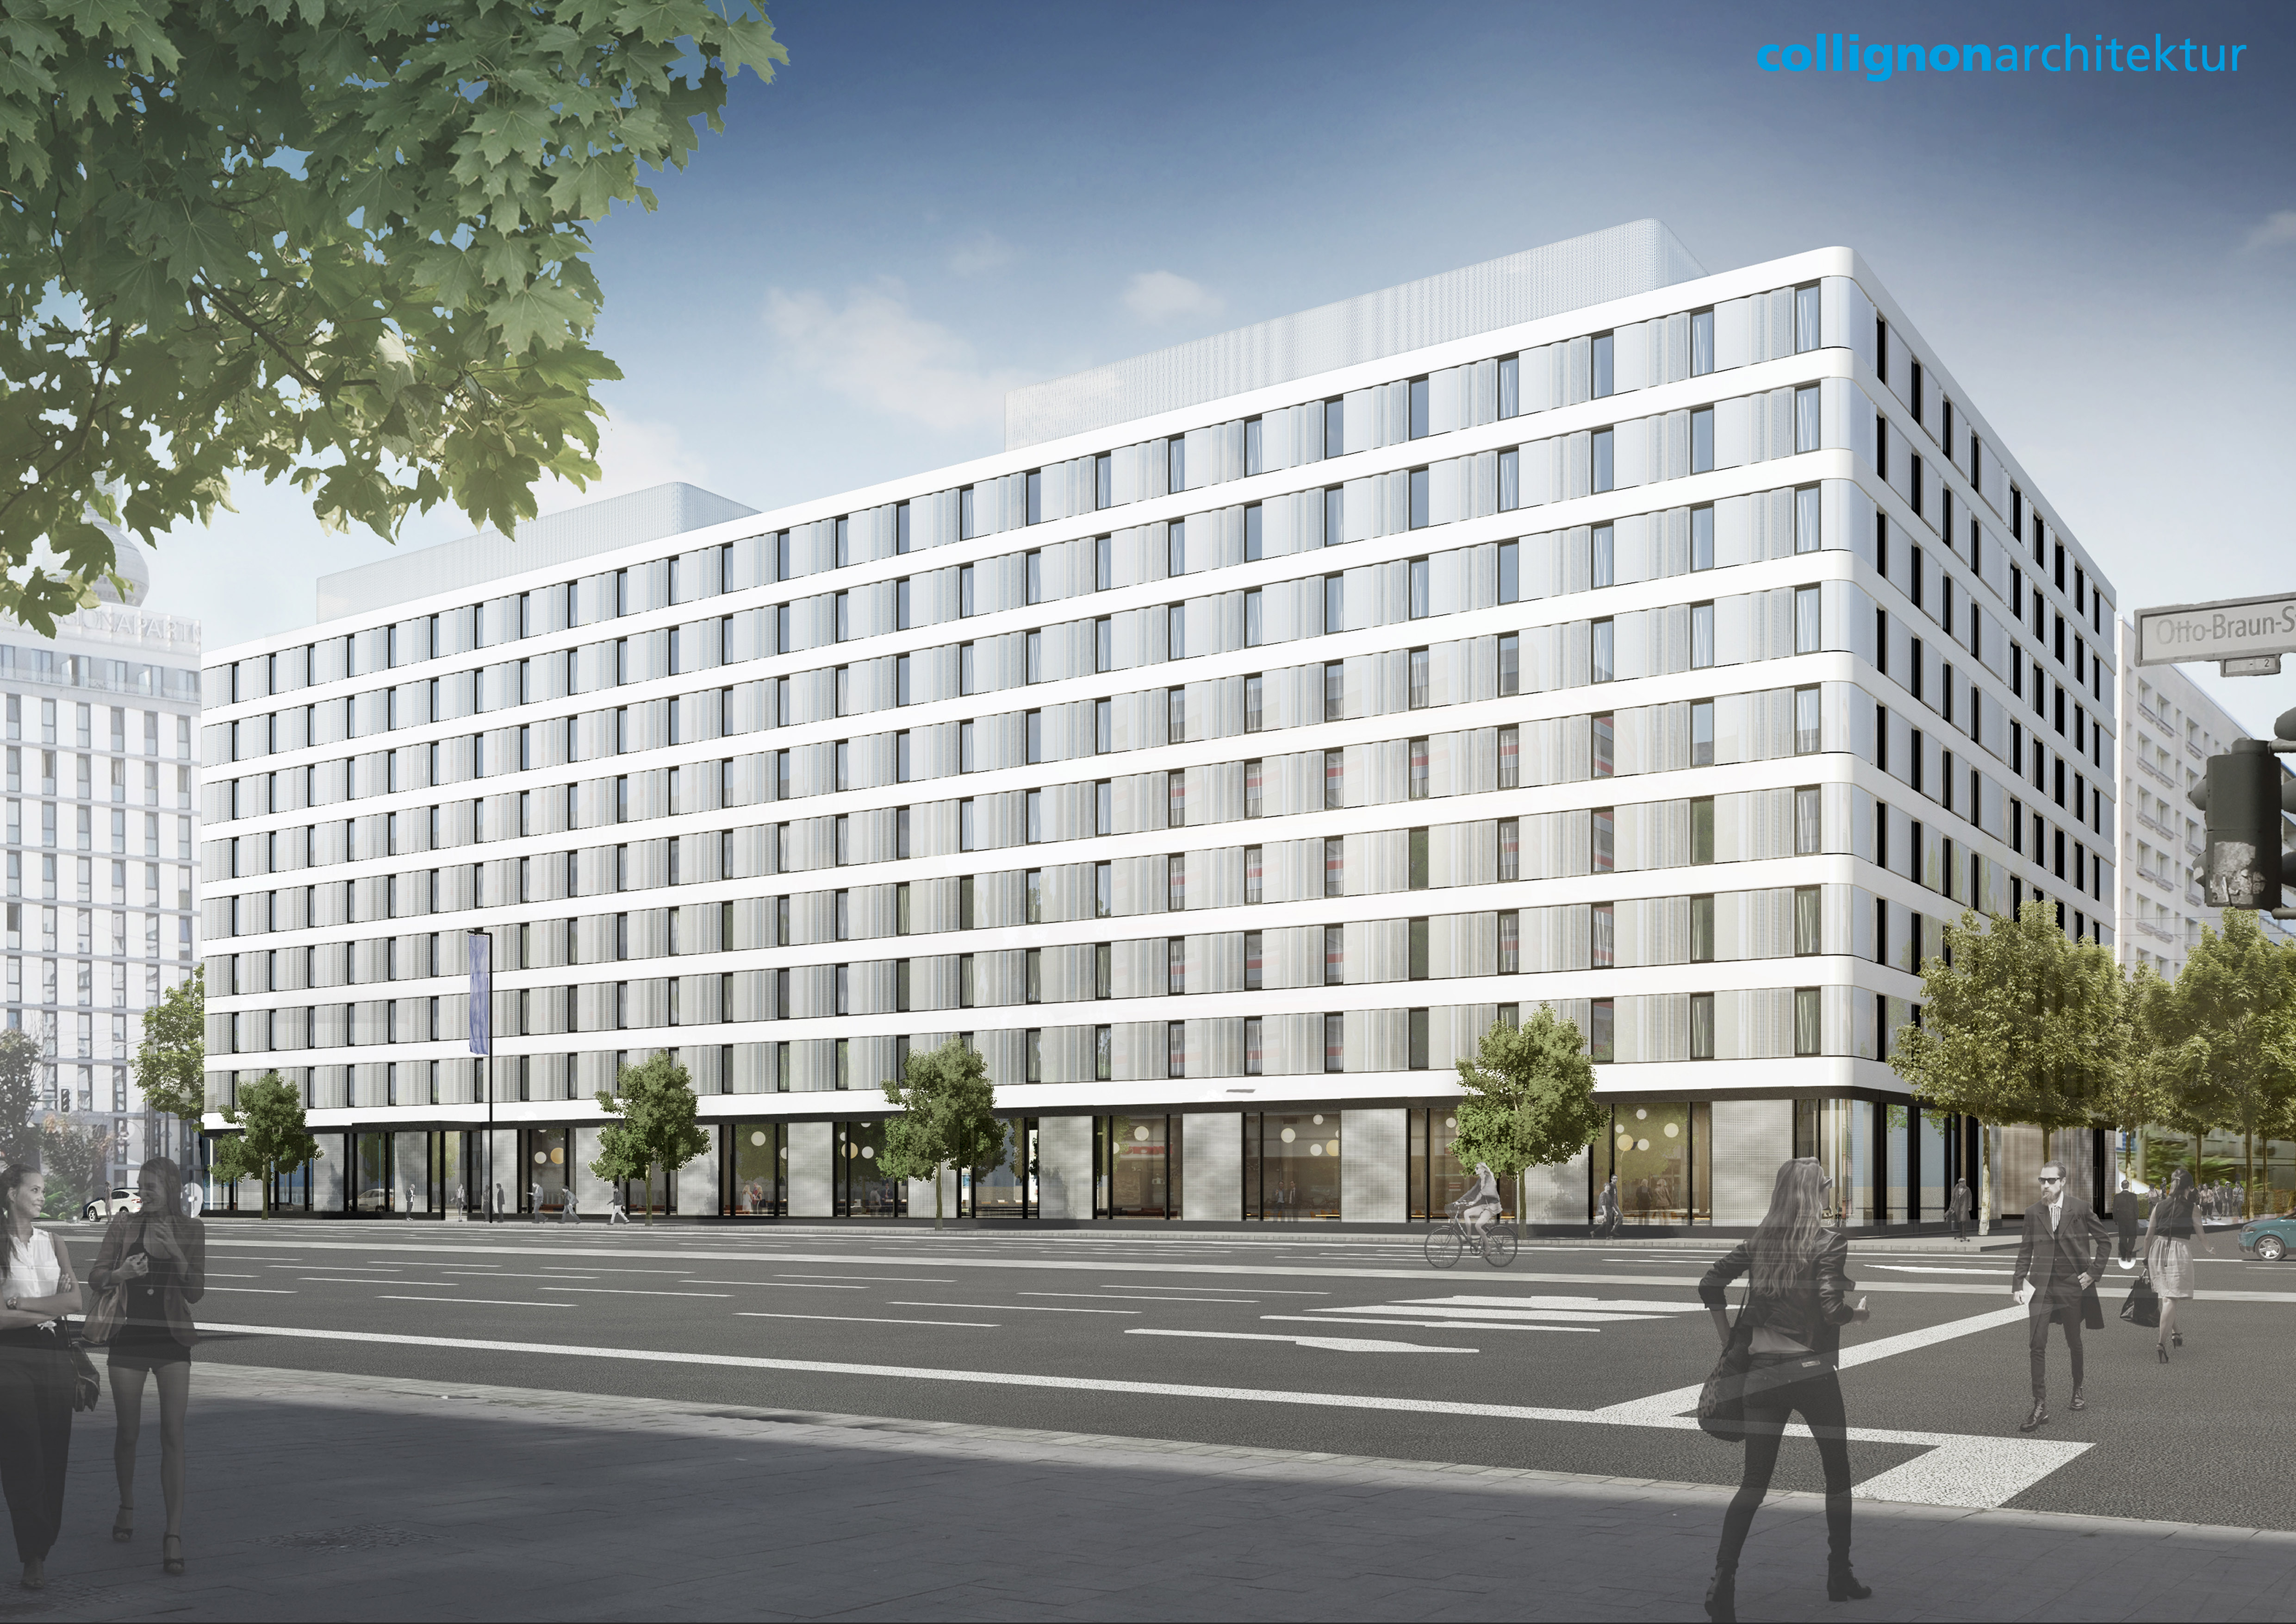 Großes Hotelprojekt: Hampton by Hilton mit 344 Zimmer am Alexanderplatz in Berlin - Eröffnung soll 2017 sein